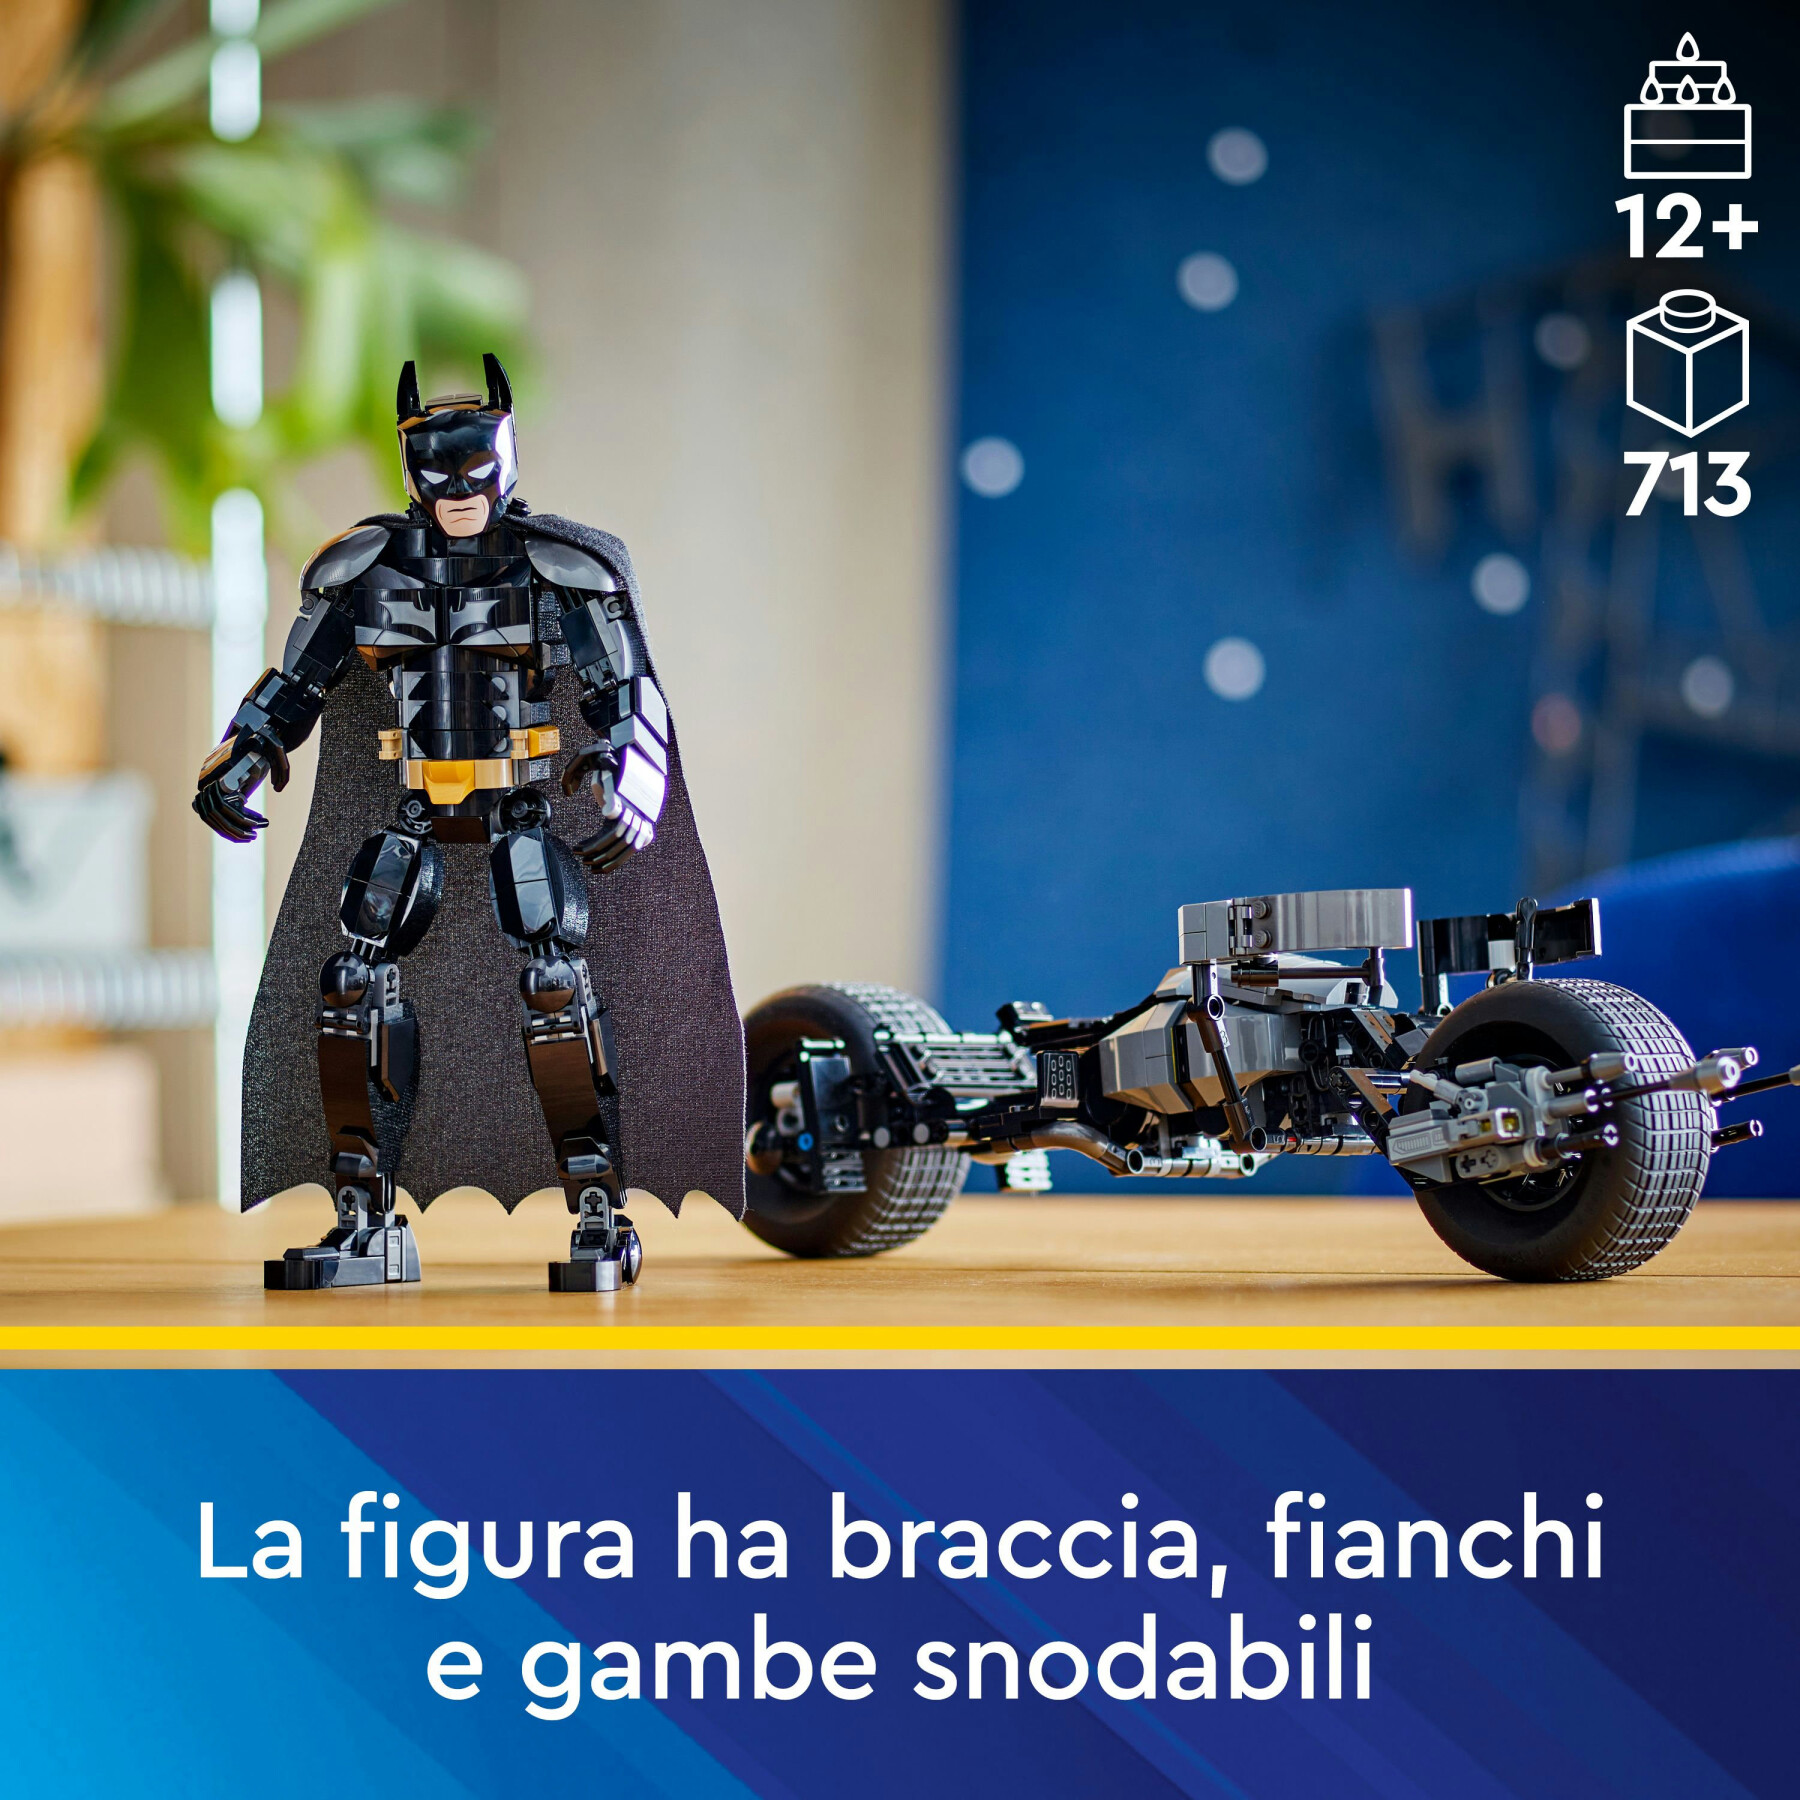 Lego dc 76273 il personaggio costruibile di batman con bat-pod, moto e action figure supereroe giocattolo, regalo per bambini - LEGO SUPER HEROES